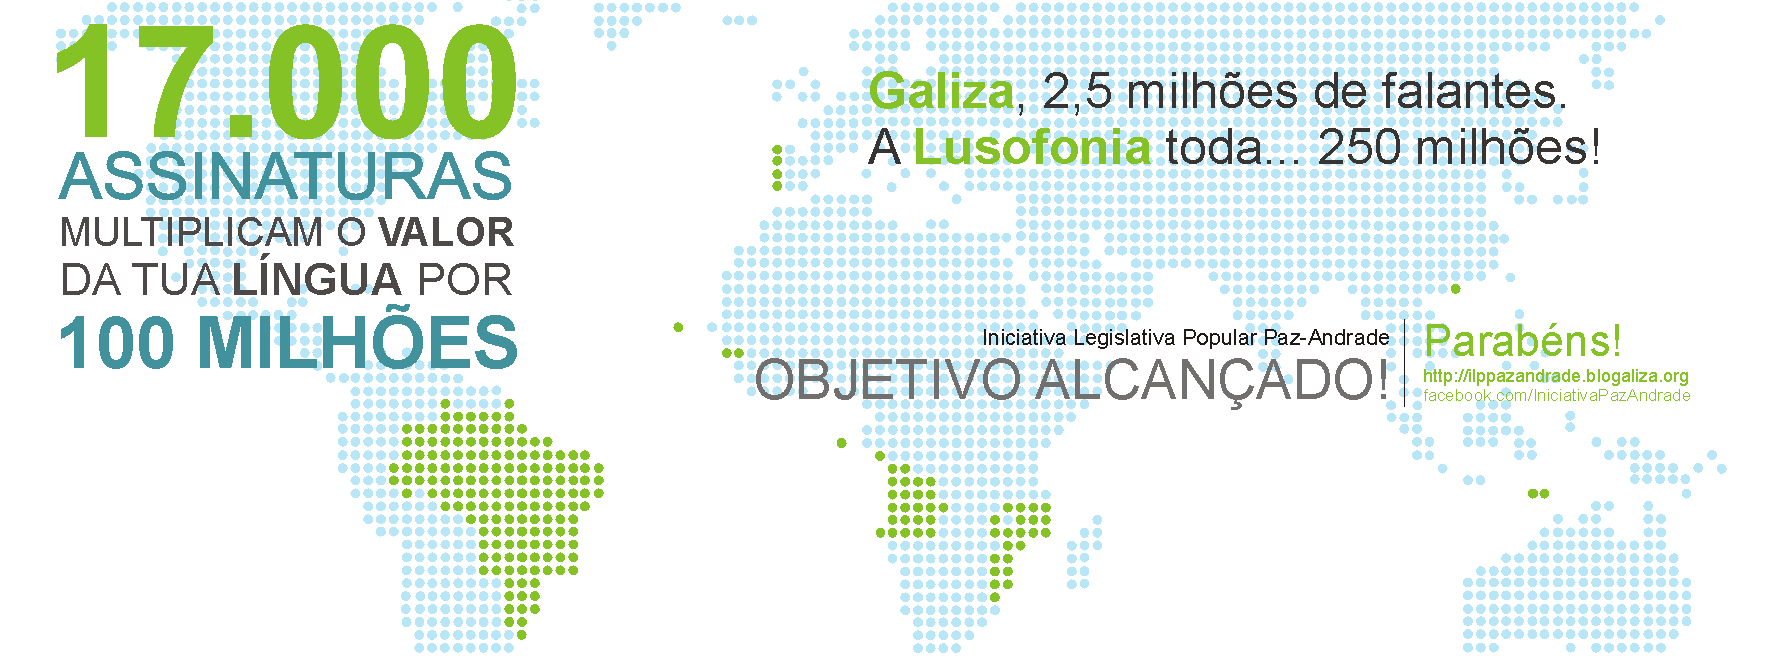 17.000 assinaturas polo português na Galiza